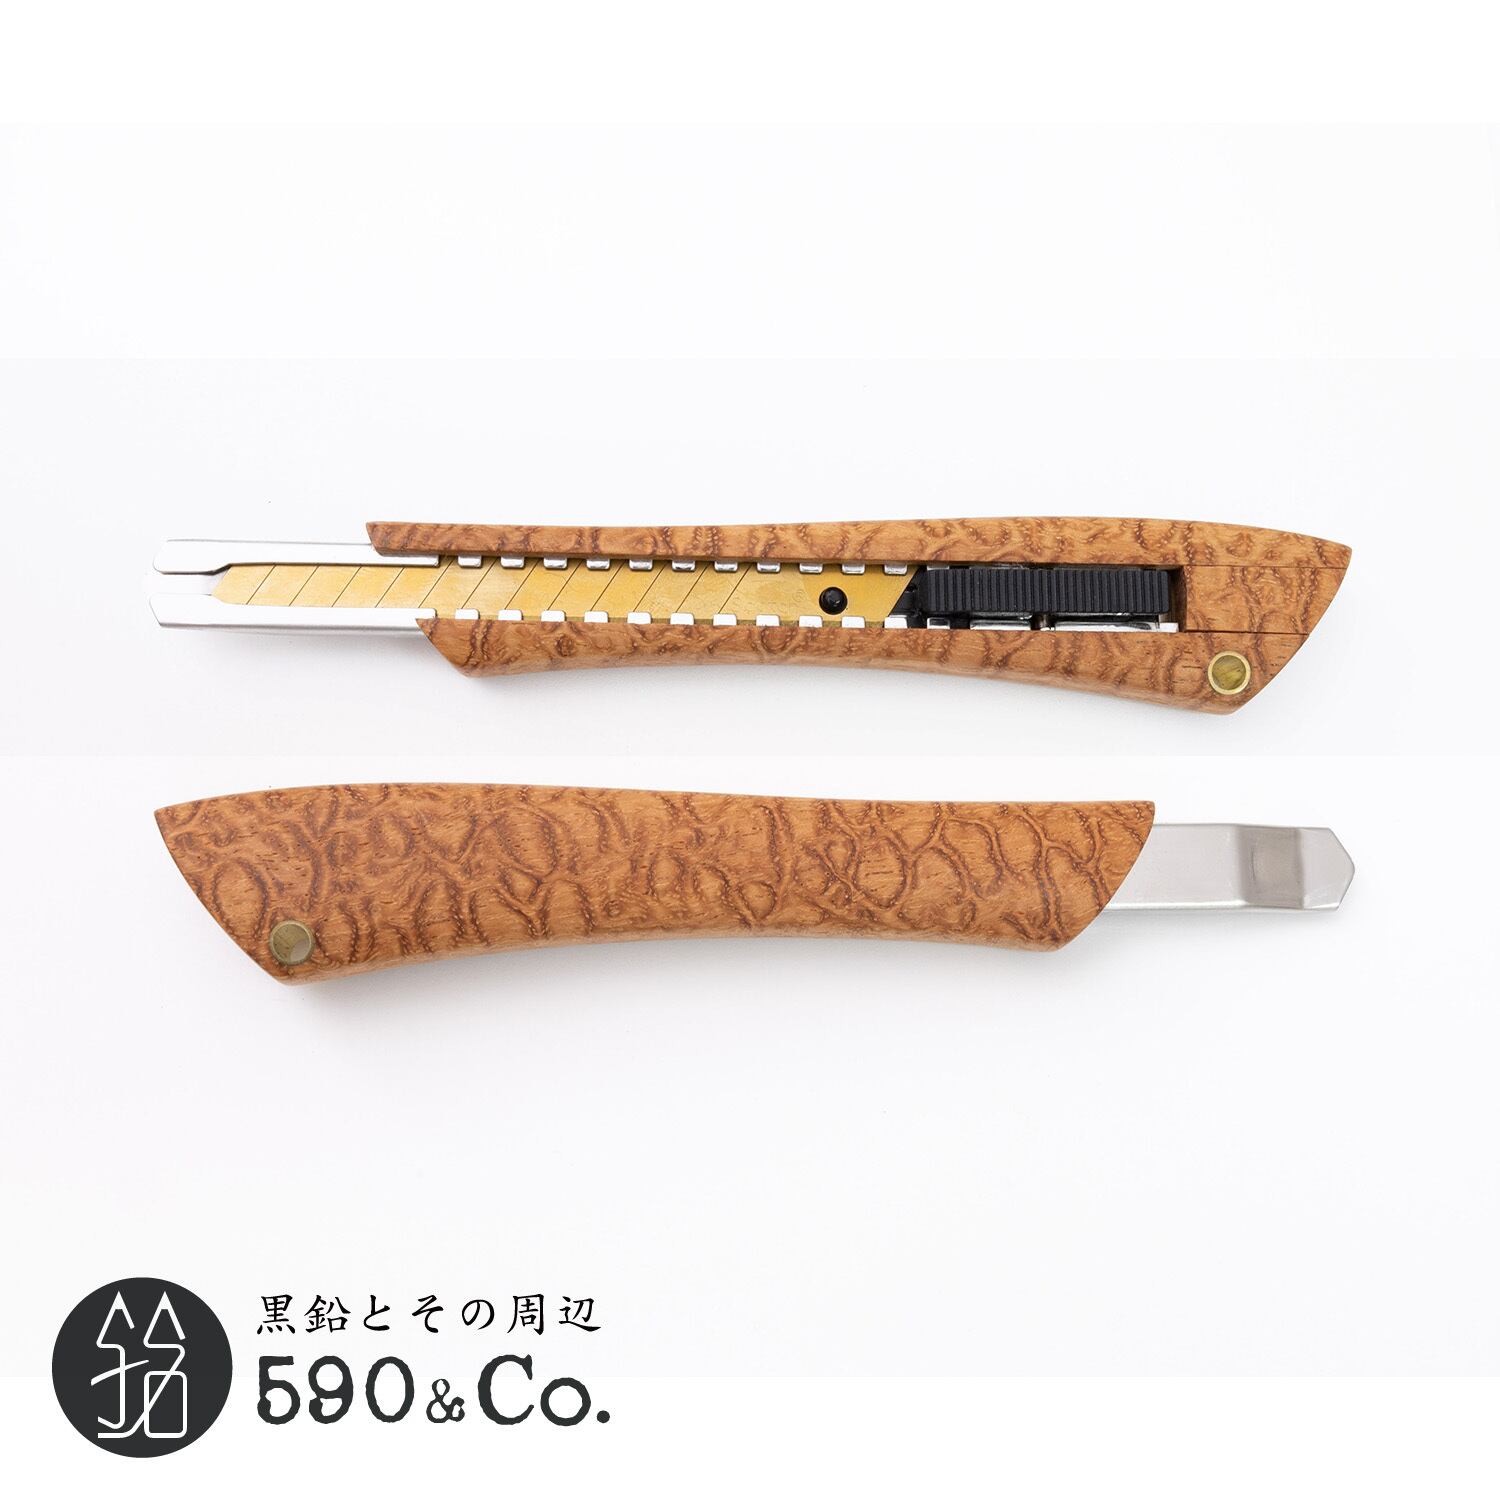 Flamberg/フランベルク】木製カッターナイフS型 (スタビライズドウッド